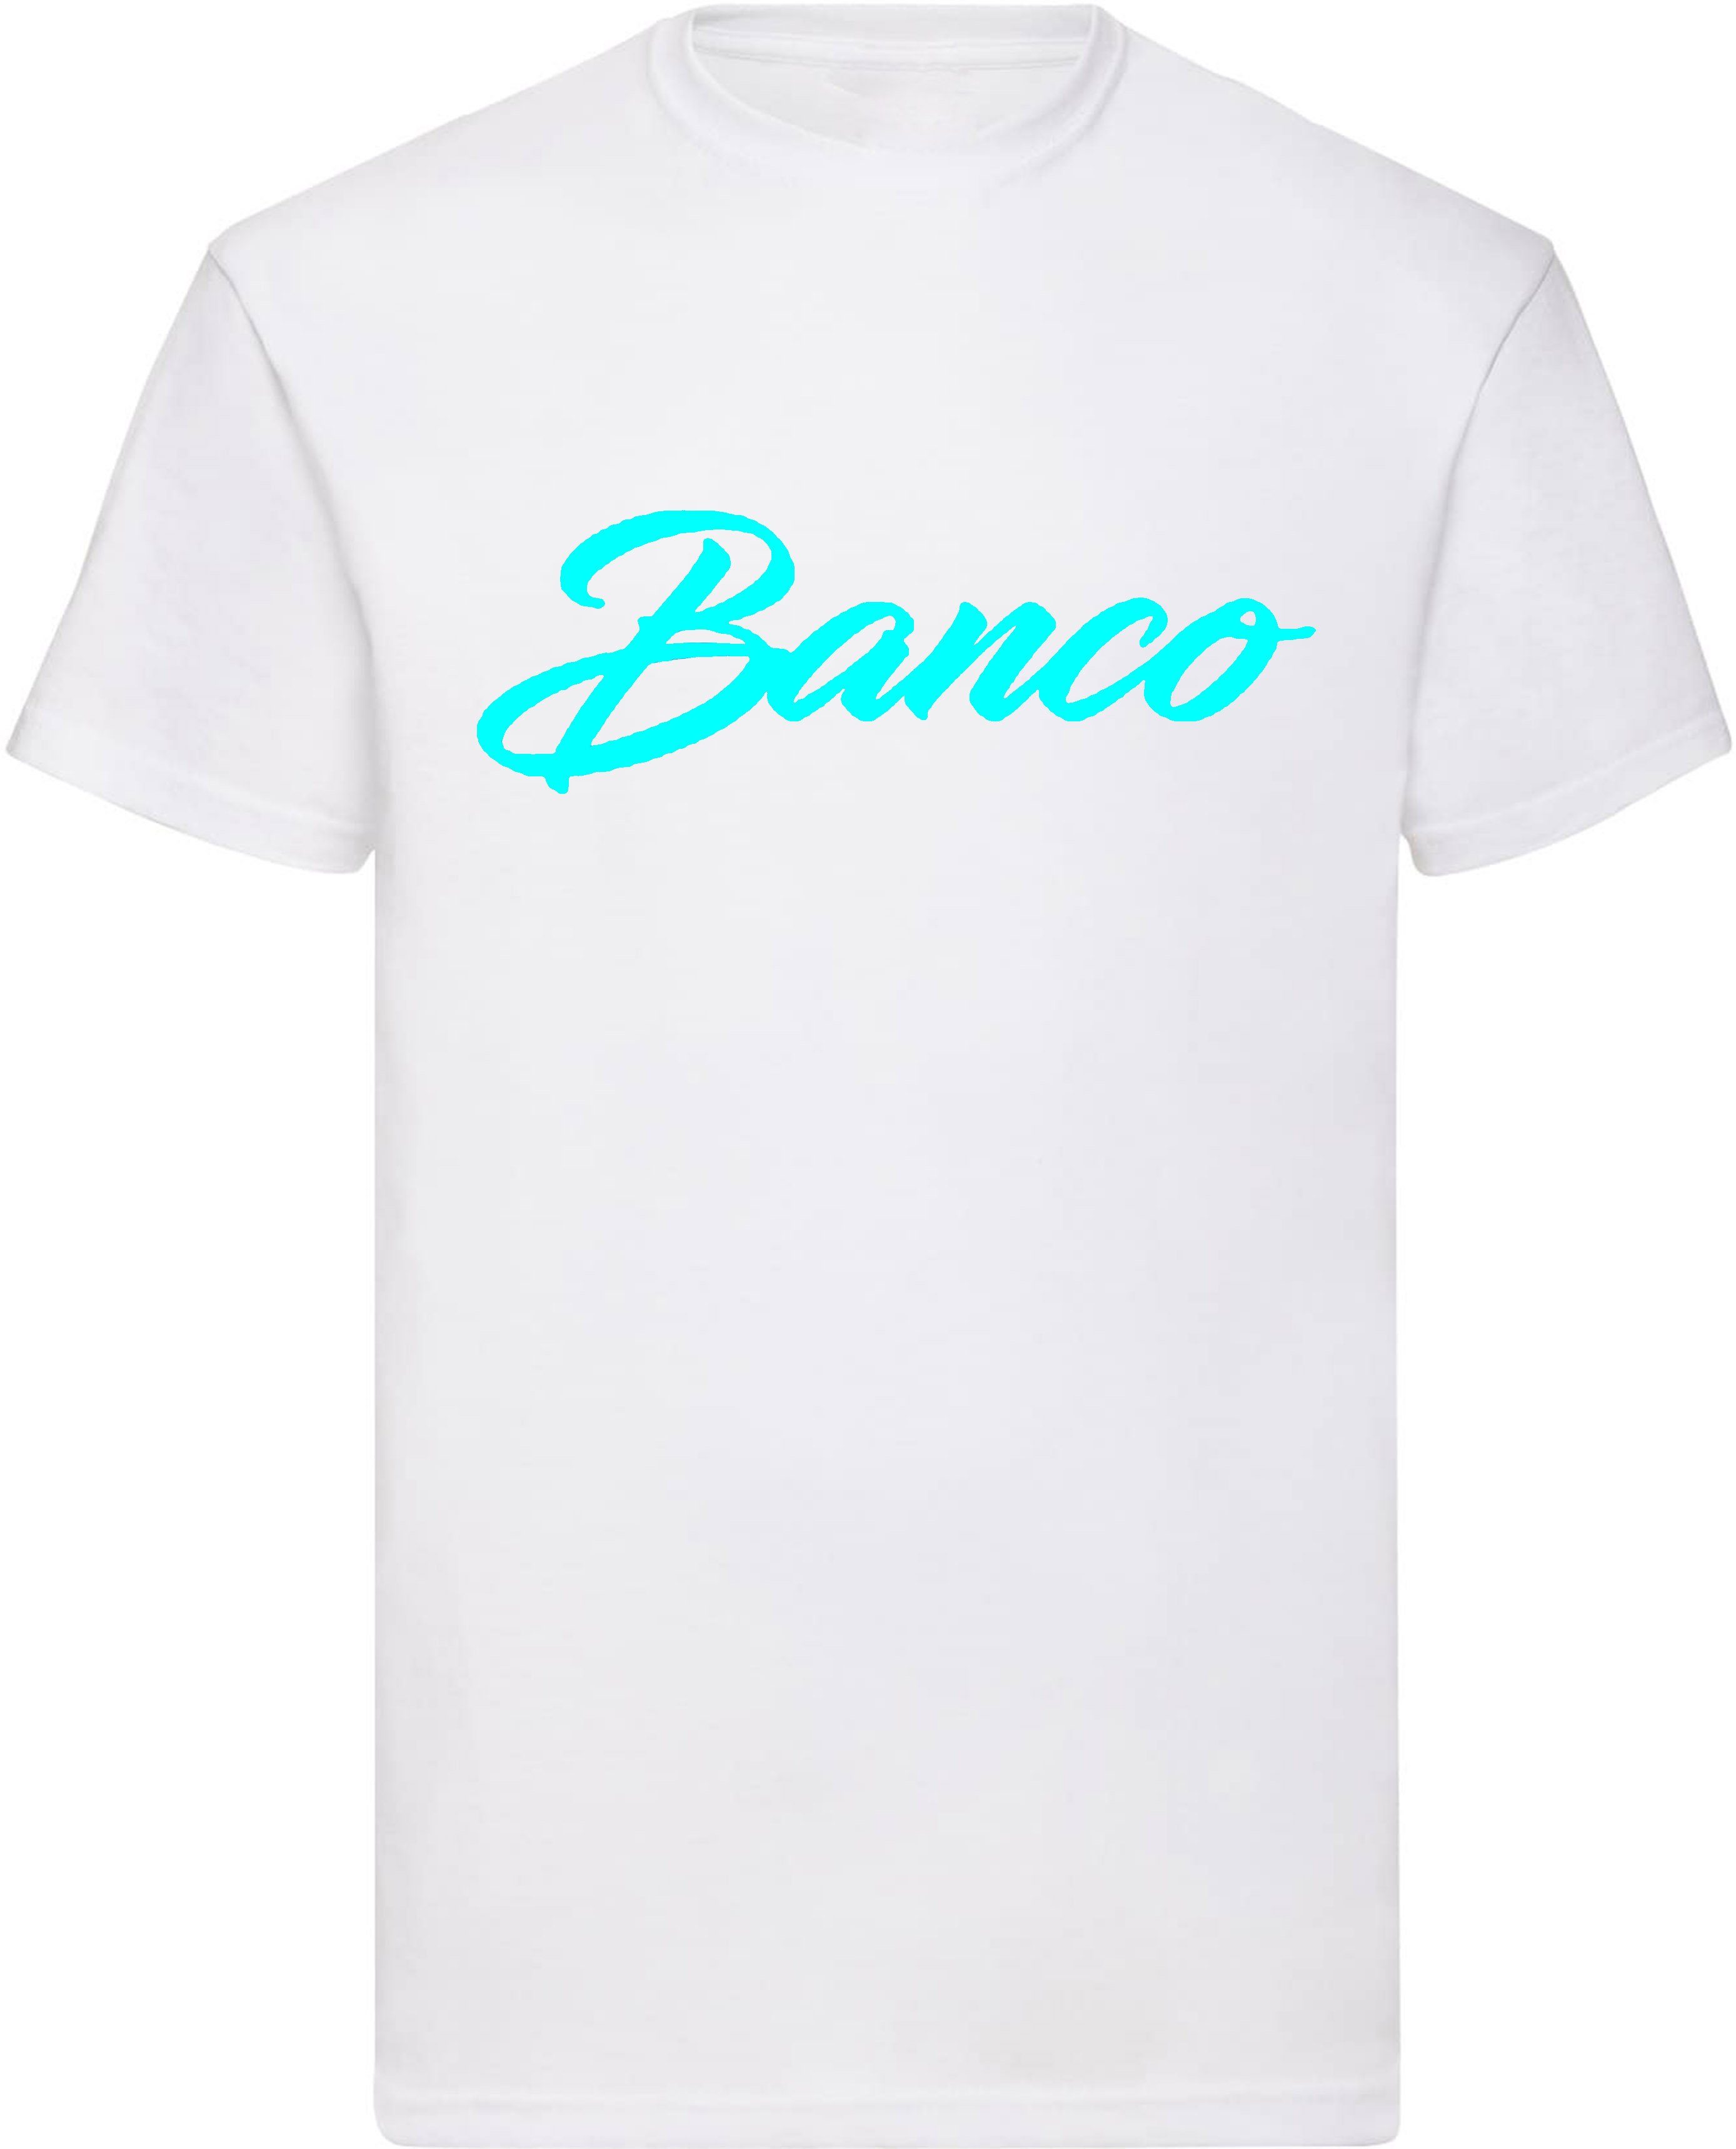 Banco T-Shirt Herren Kurzarm Rundhals Shirt Sommer Sport Freizeit Streetwear